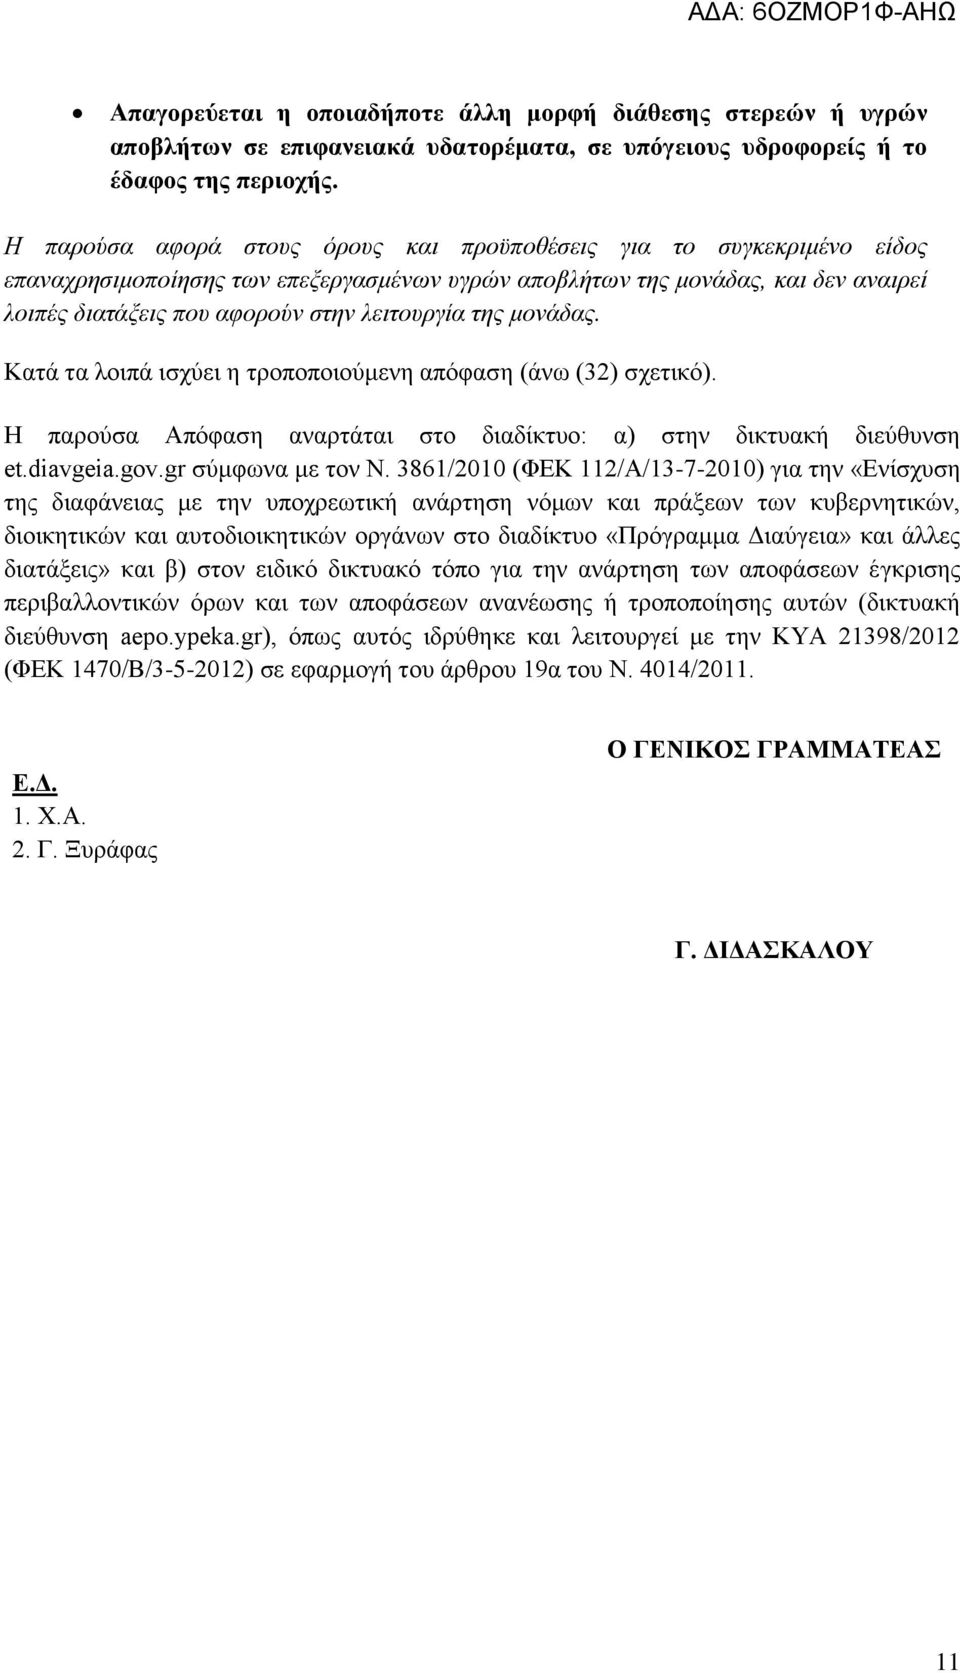 της μονάδας. Κατά τα λοιπά ισχύει η τροποποιούμενη απόφαση (άνω (32) σχετικό). Η παρούσα Απόφαση αναρτάται στο διαδίκτυο: α) στην δικτυακή διεύθυνση et.diavgeia.gov.gr σύμφωνα με τον Ν.